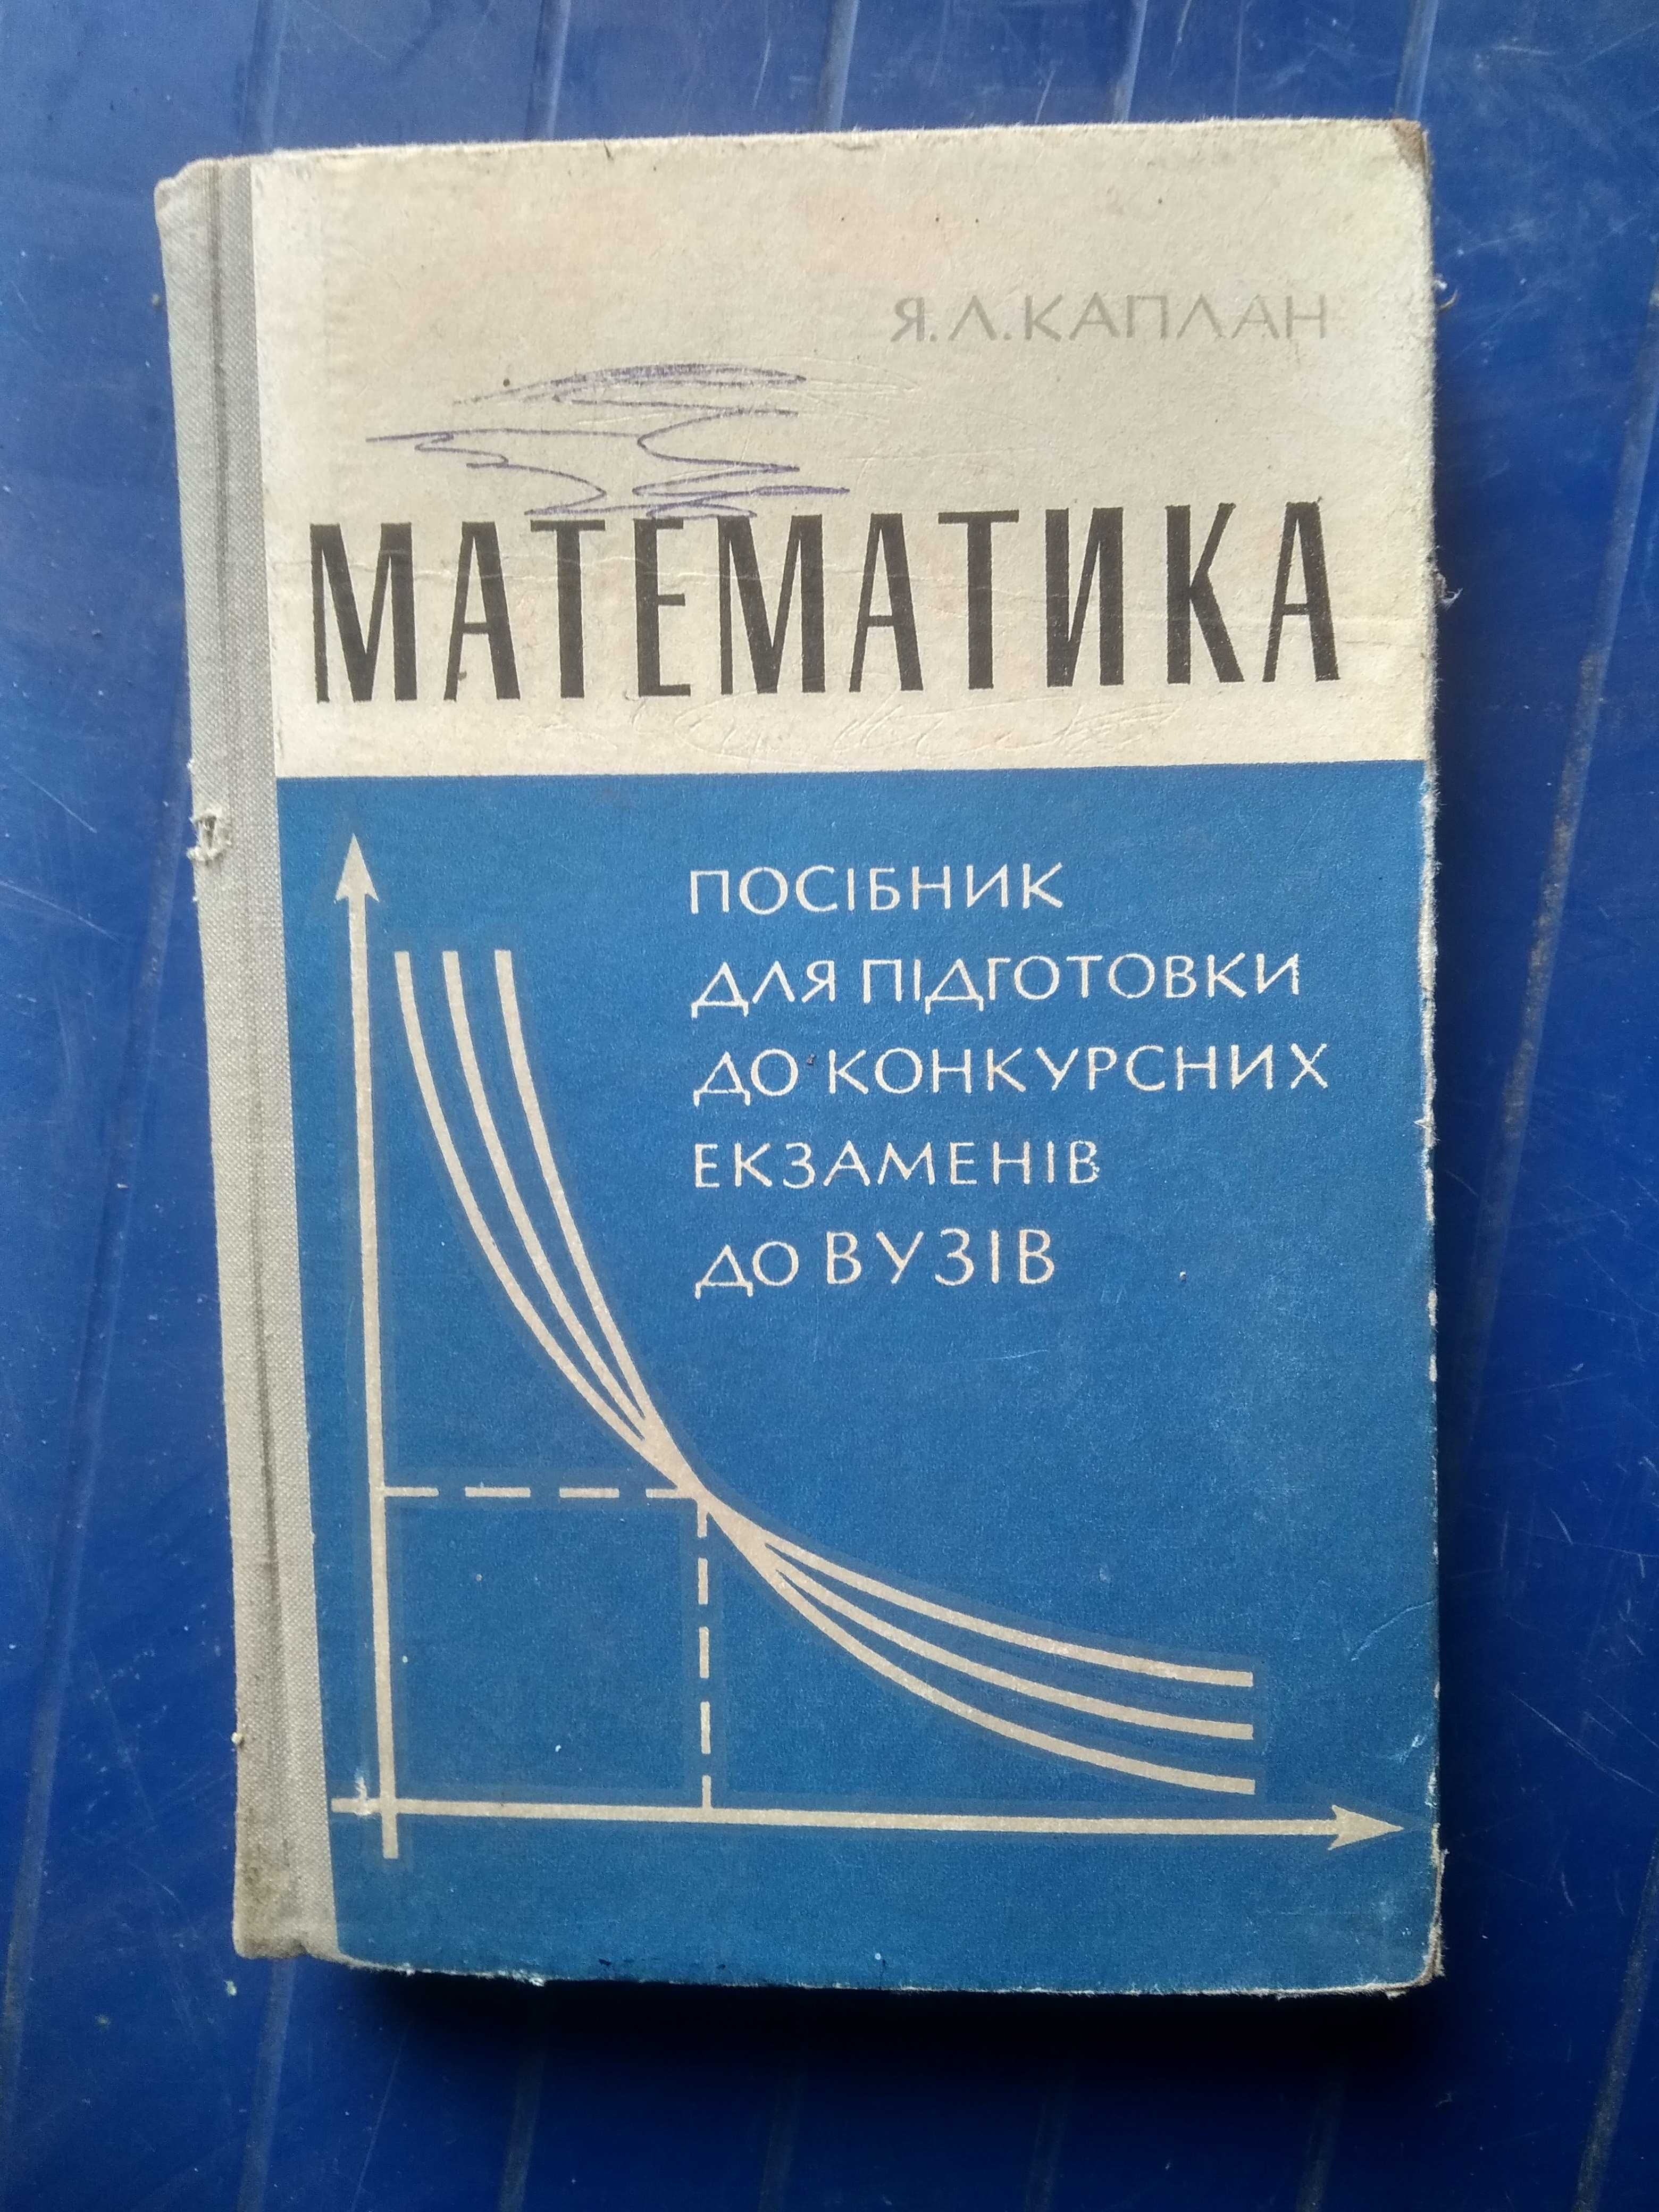 Учебники СССР по математике, алгебре, физике, механике.